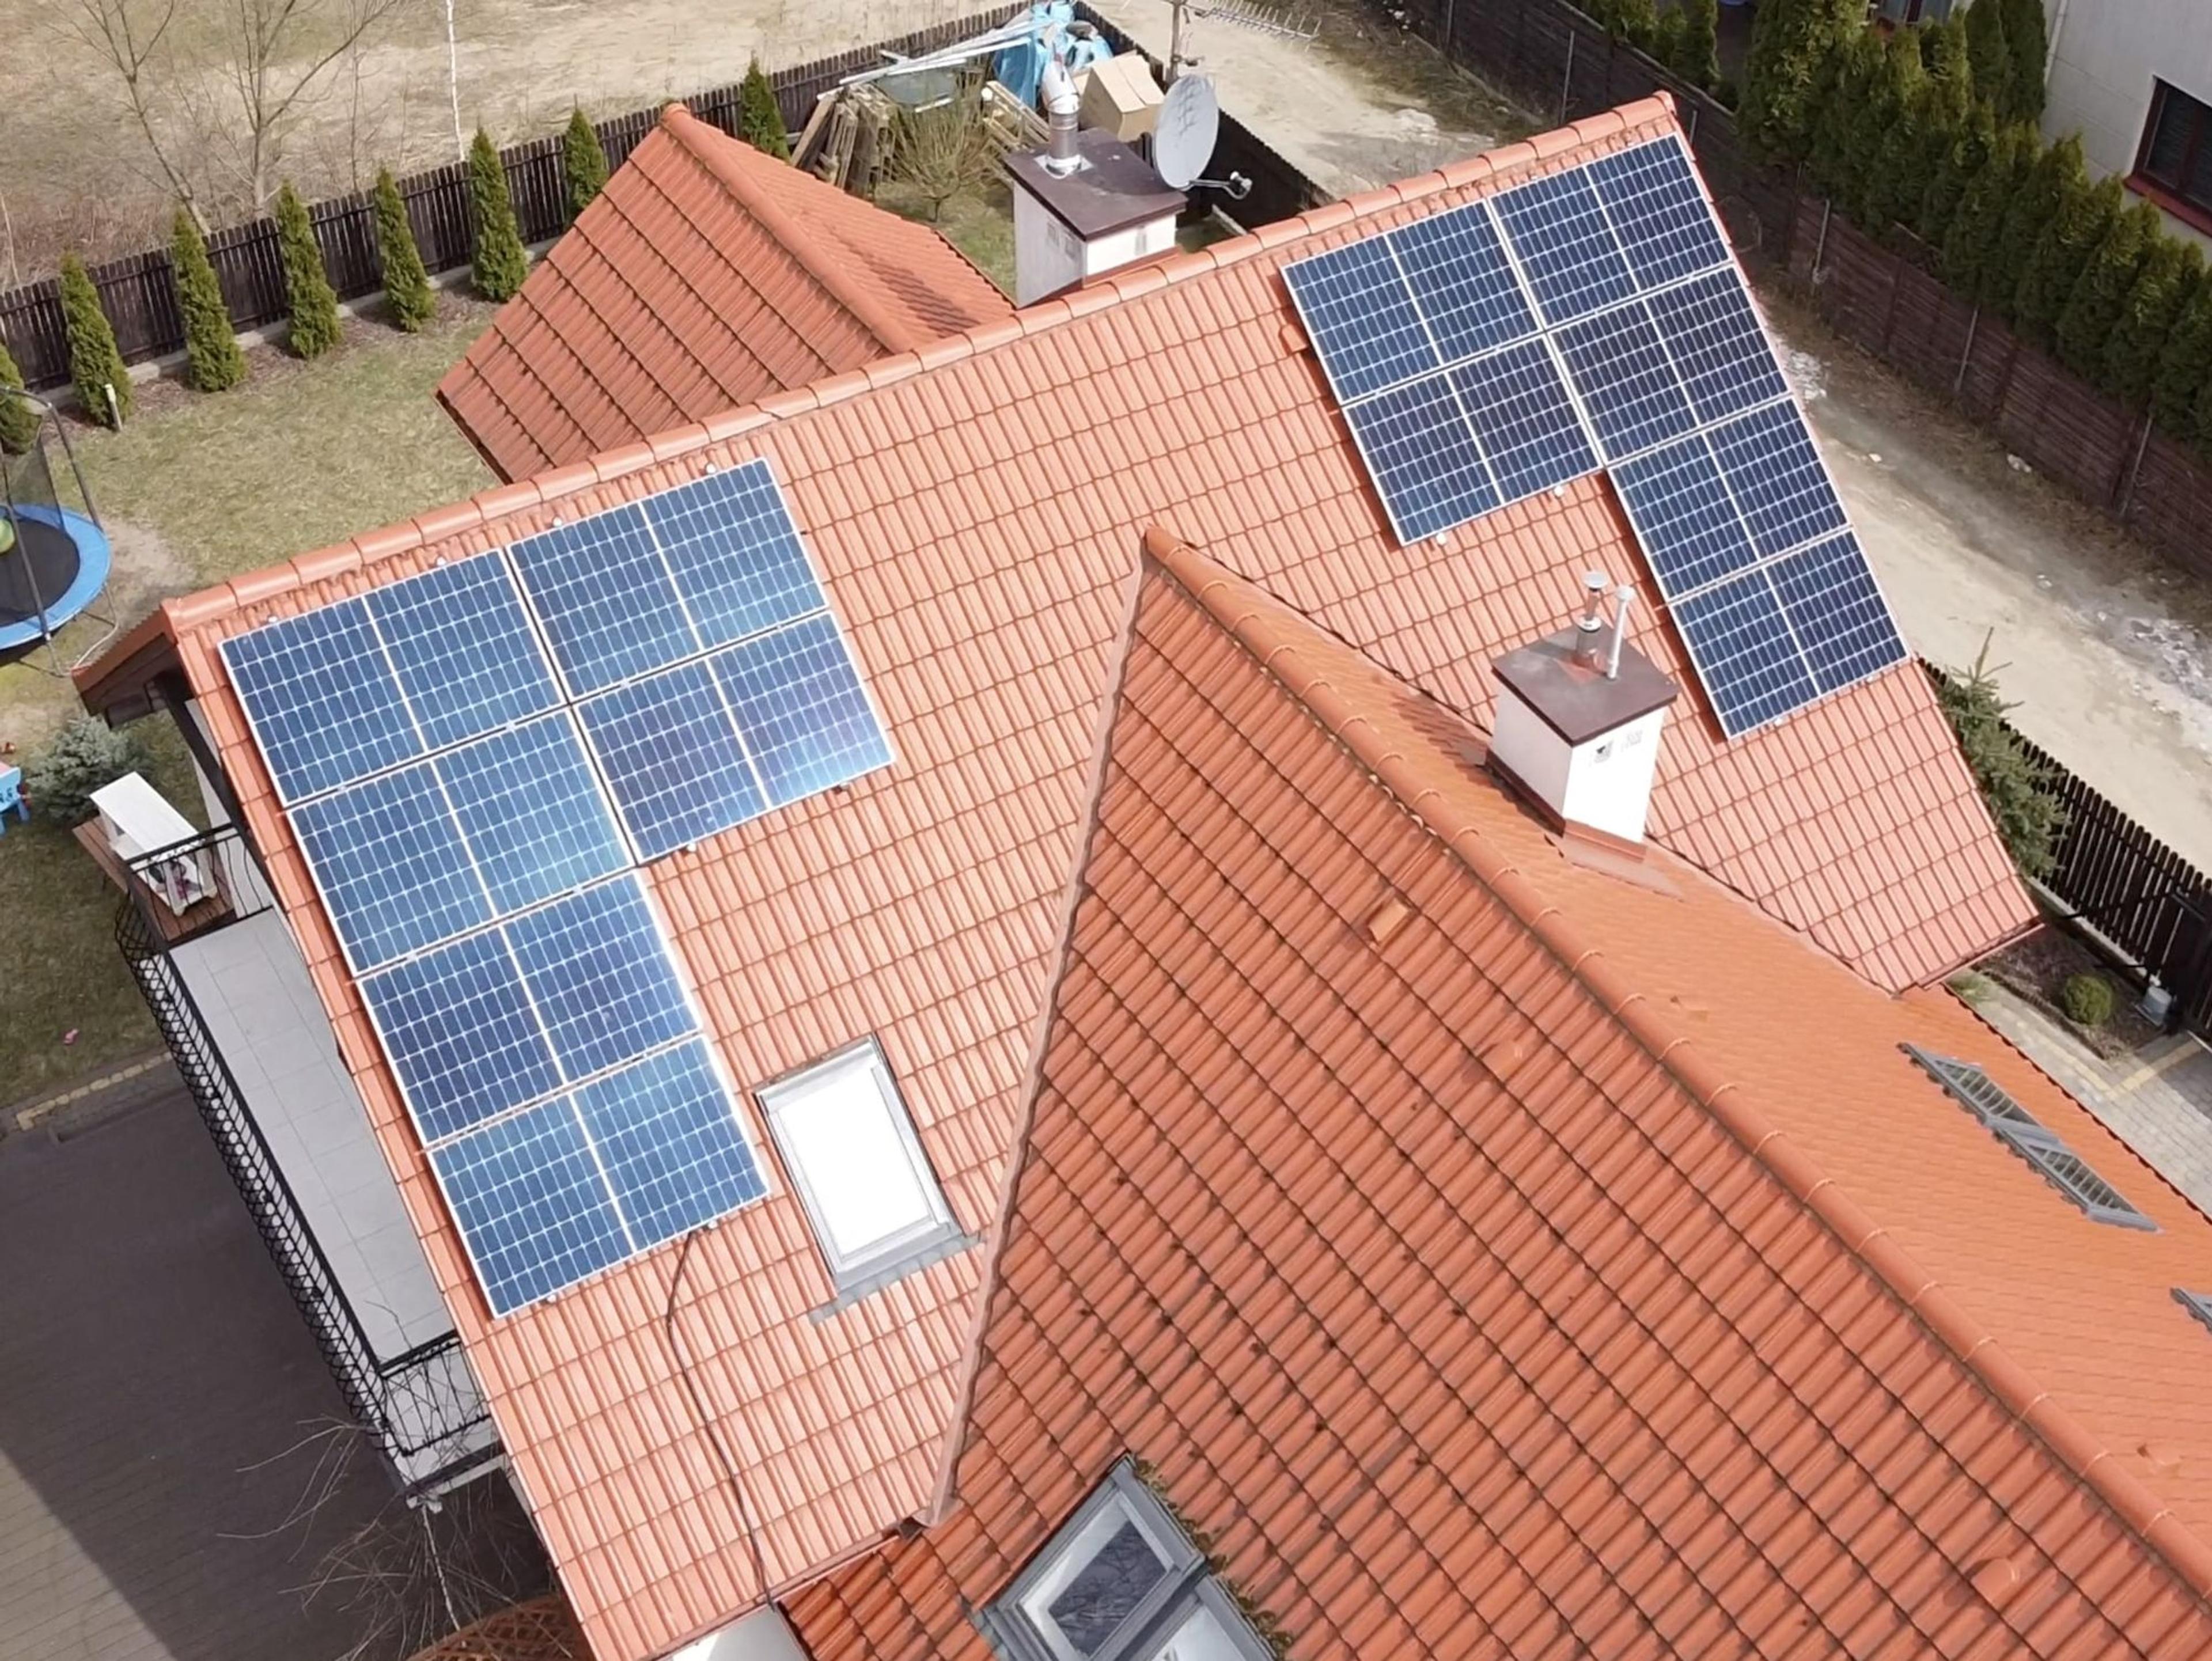 symetrycznie ustawione panele fotowoltaiczne na jednej połaci dachowej